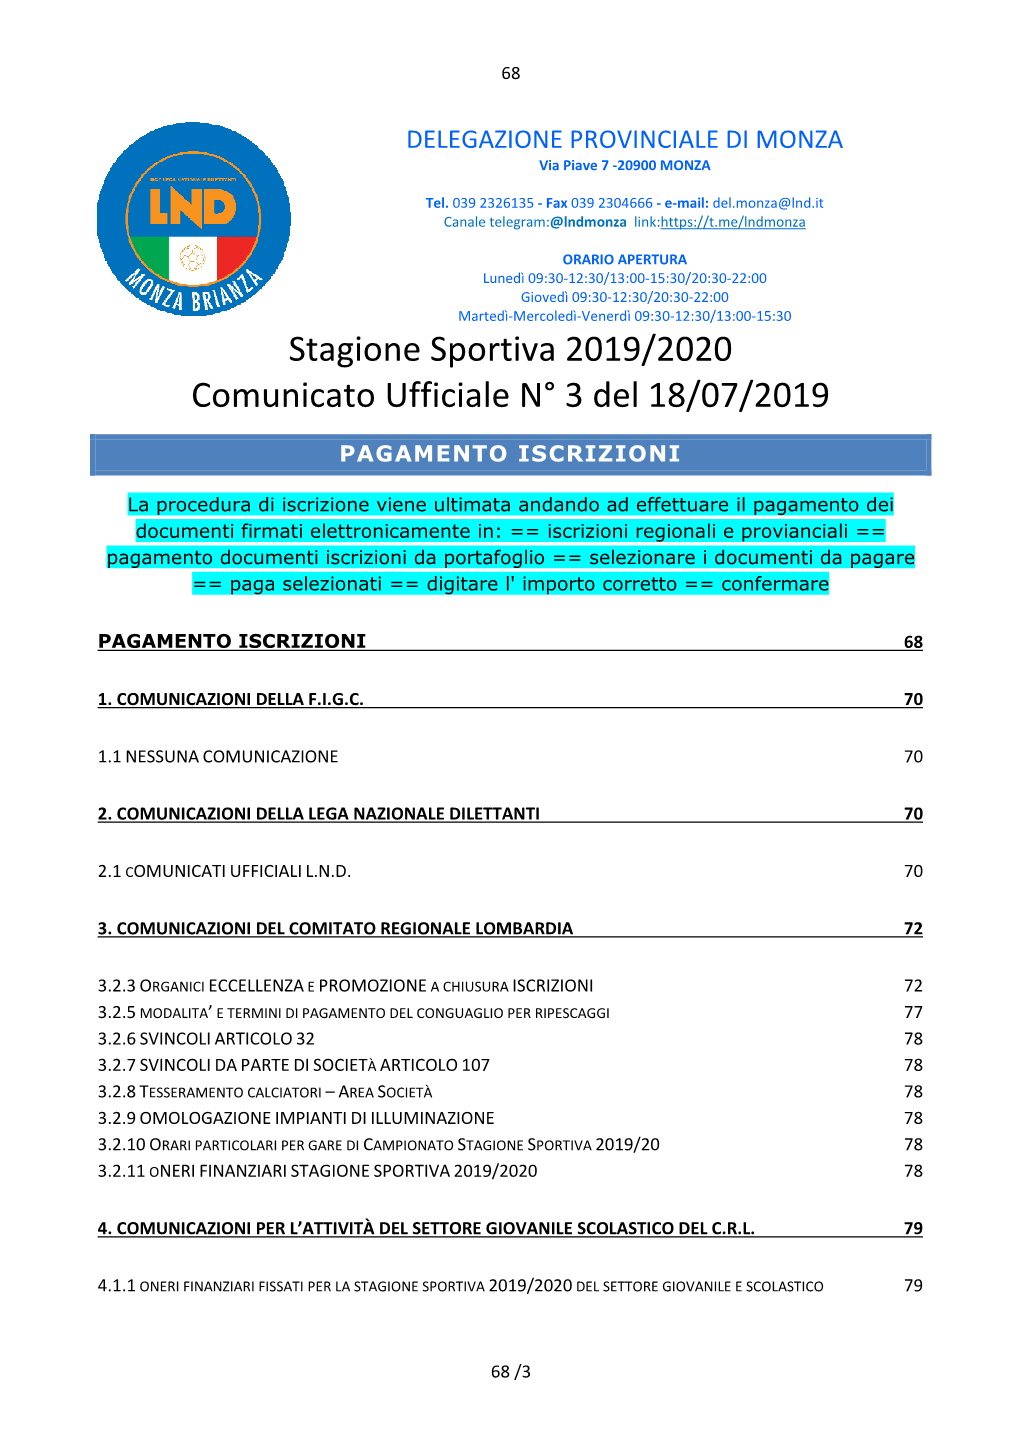 Stagione Sportiva 2019/2020 Comunicato Ufficiale N° 3 Del 18/07/2019